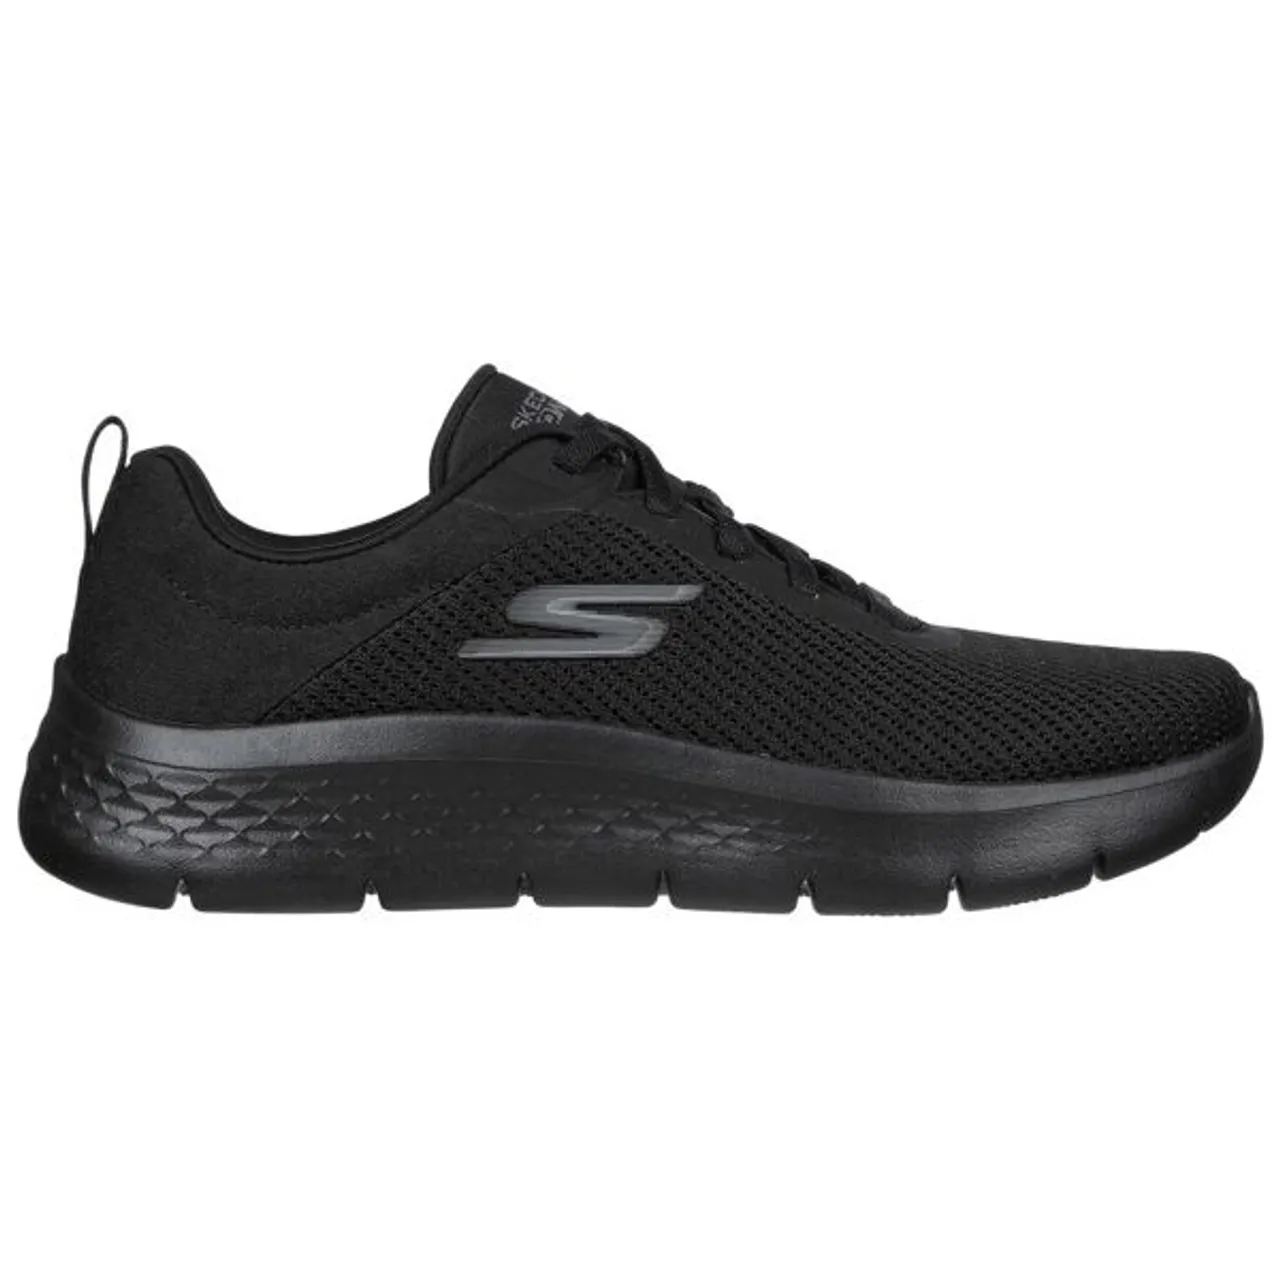 Slip-On Sneaker SKECHERS "GO WALK FLEX ALANI" Gr. 35, schwarz (schwarz, uni) Damen Schuhe Sneaker Trainingsschuh, Freizeitschuh für Maschinenwäsche ge...